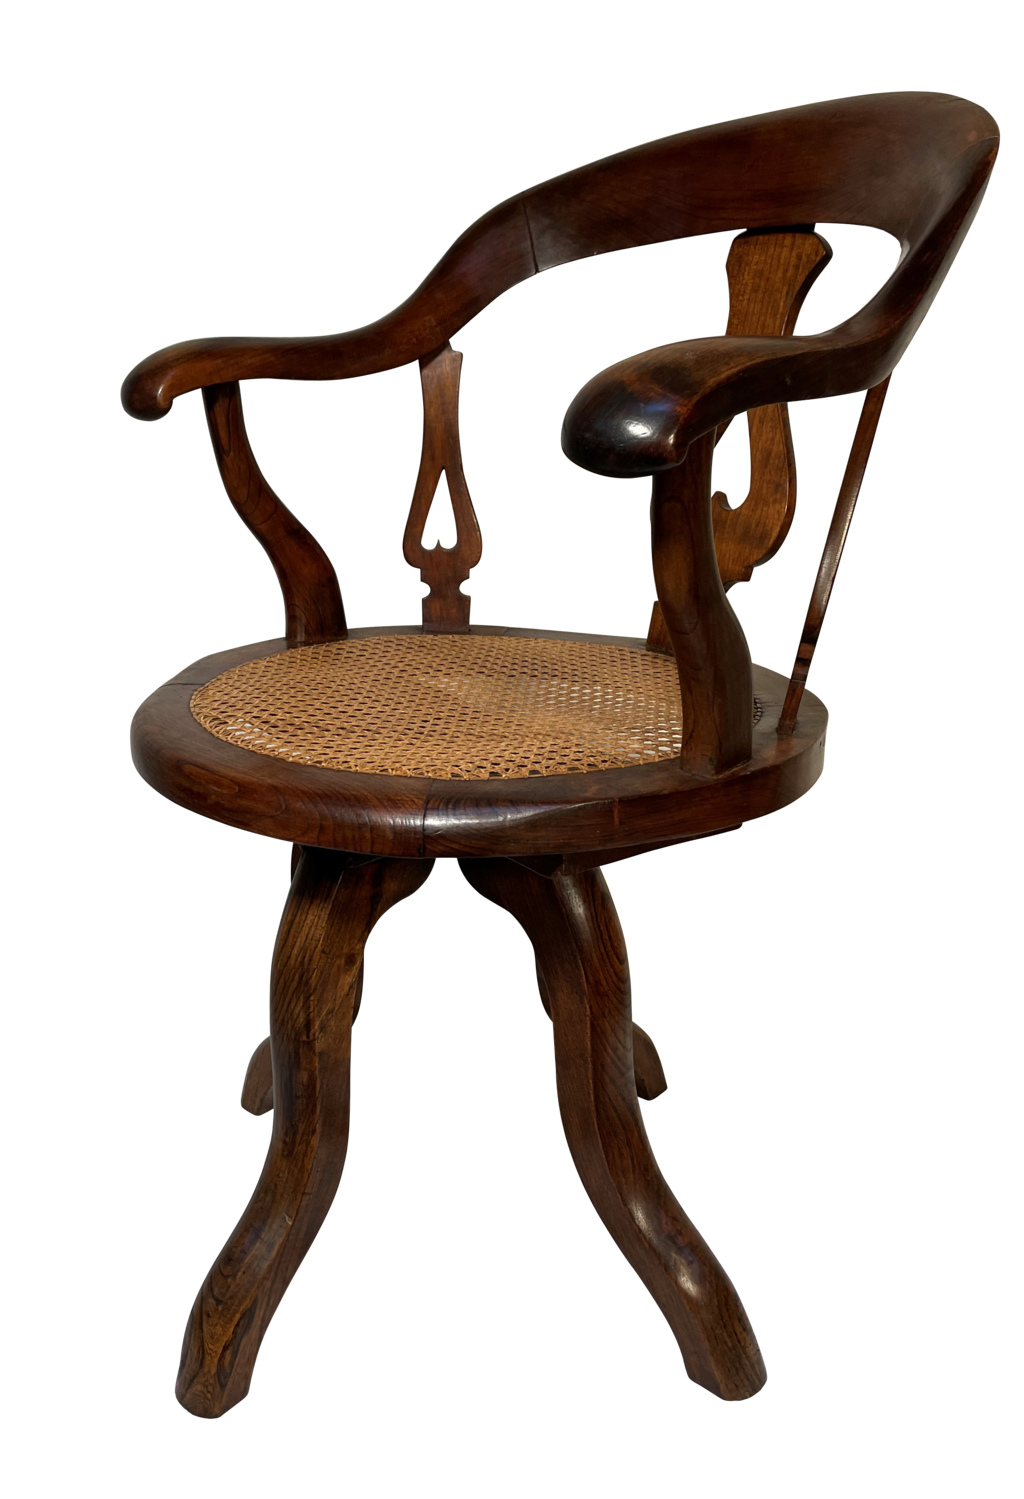 Edwardian Walnut Cane Seated Desk Chair with Swivel Mechanism